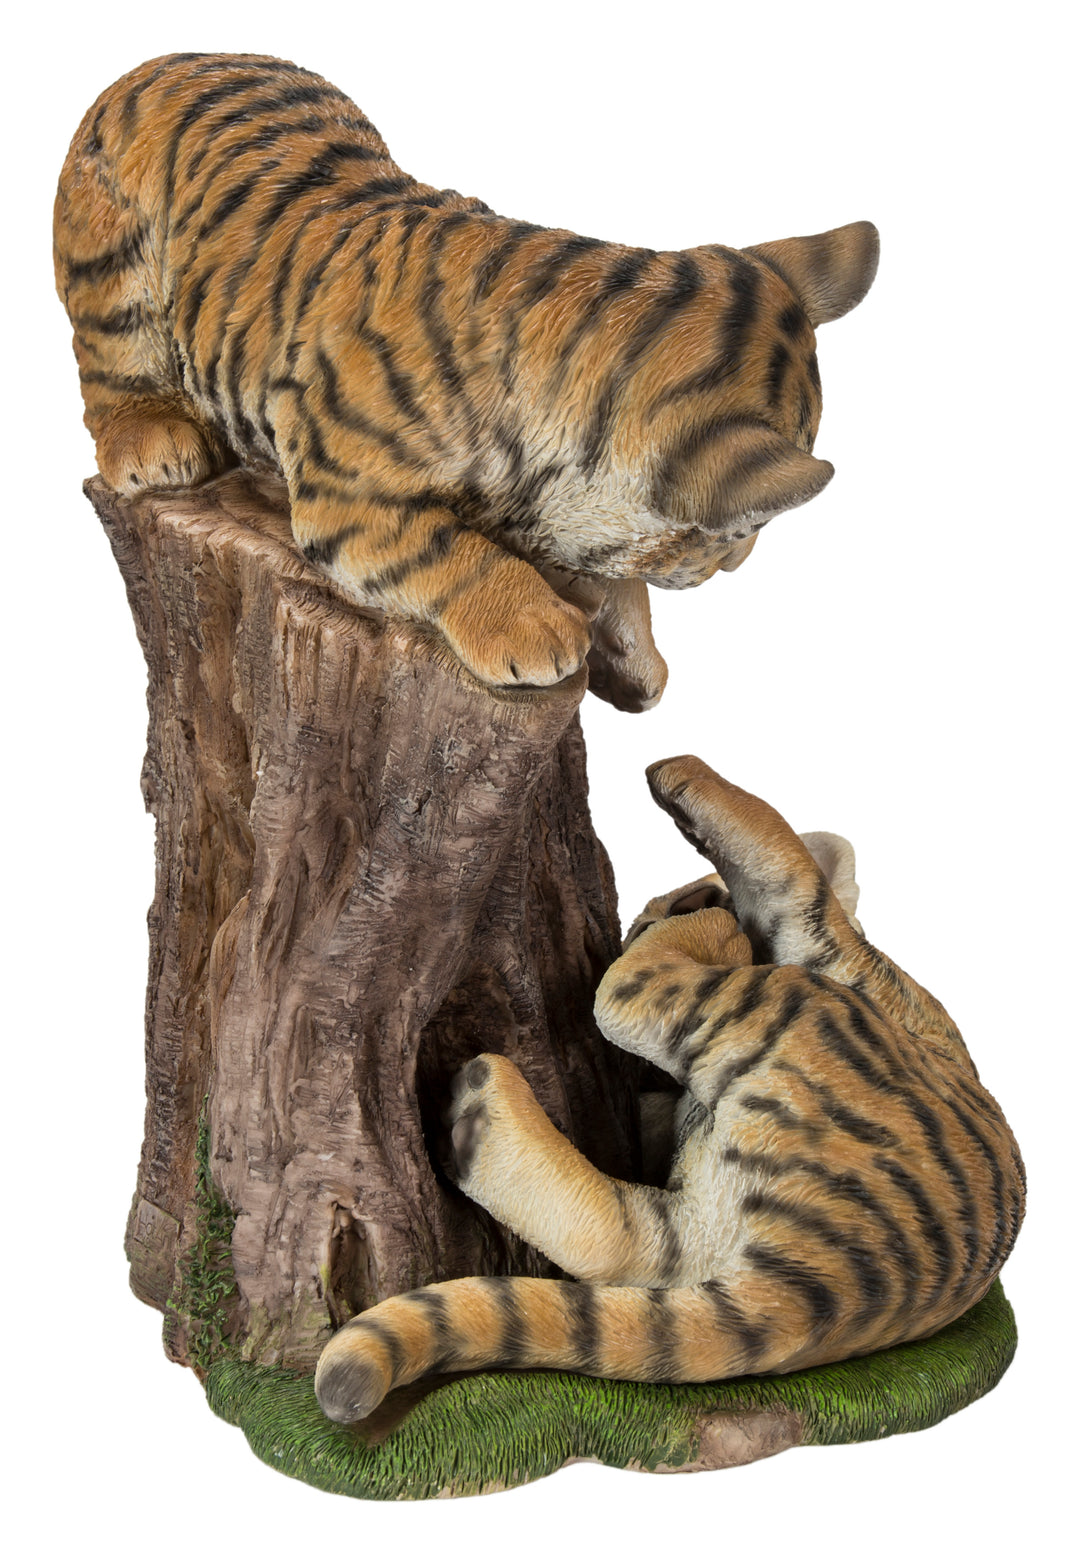 Playful Tiger Cubs HI-LINE GIFT LTD.